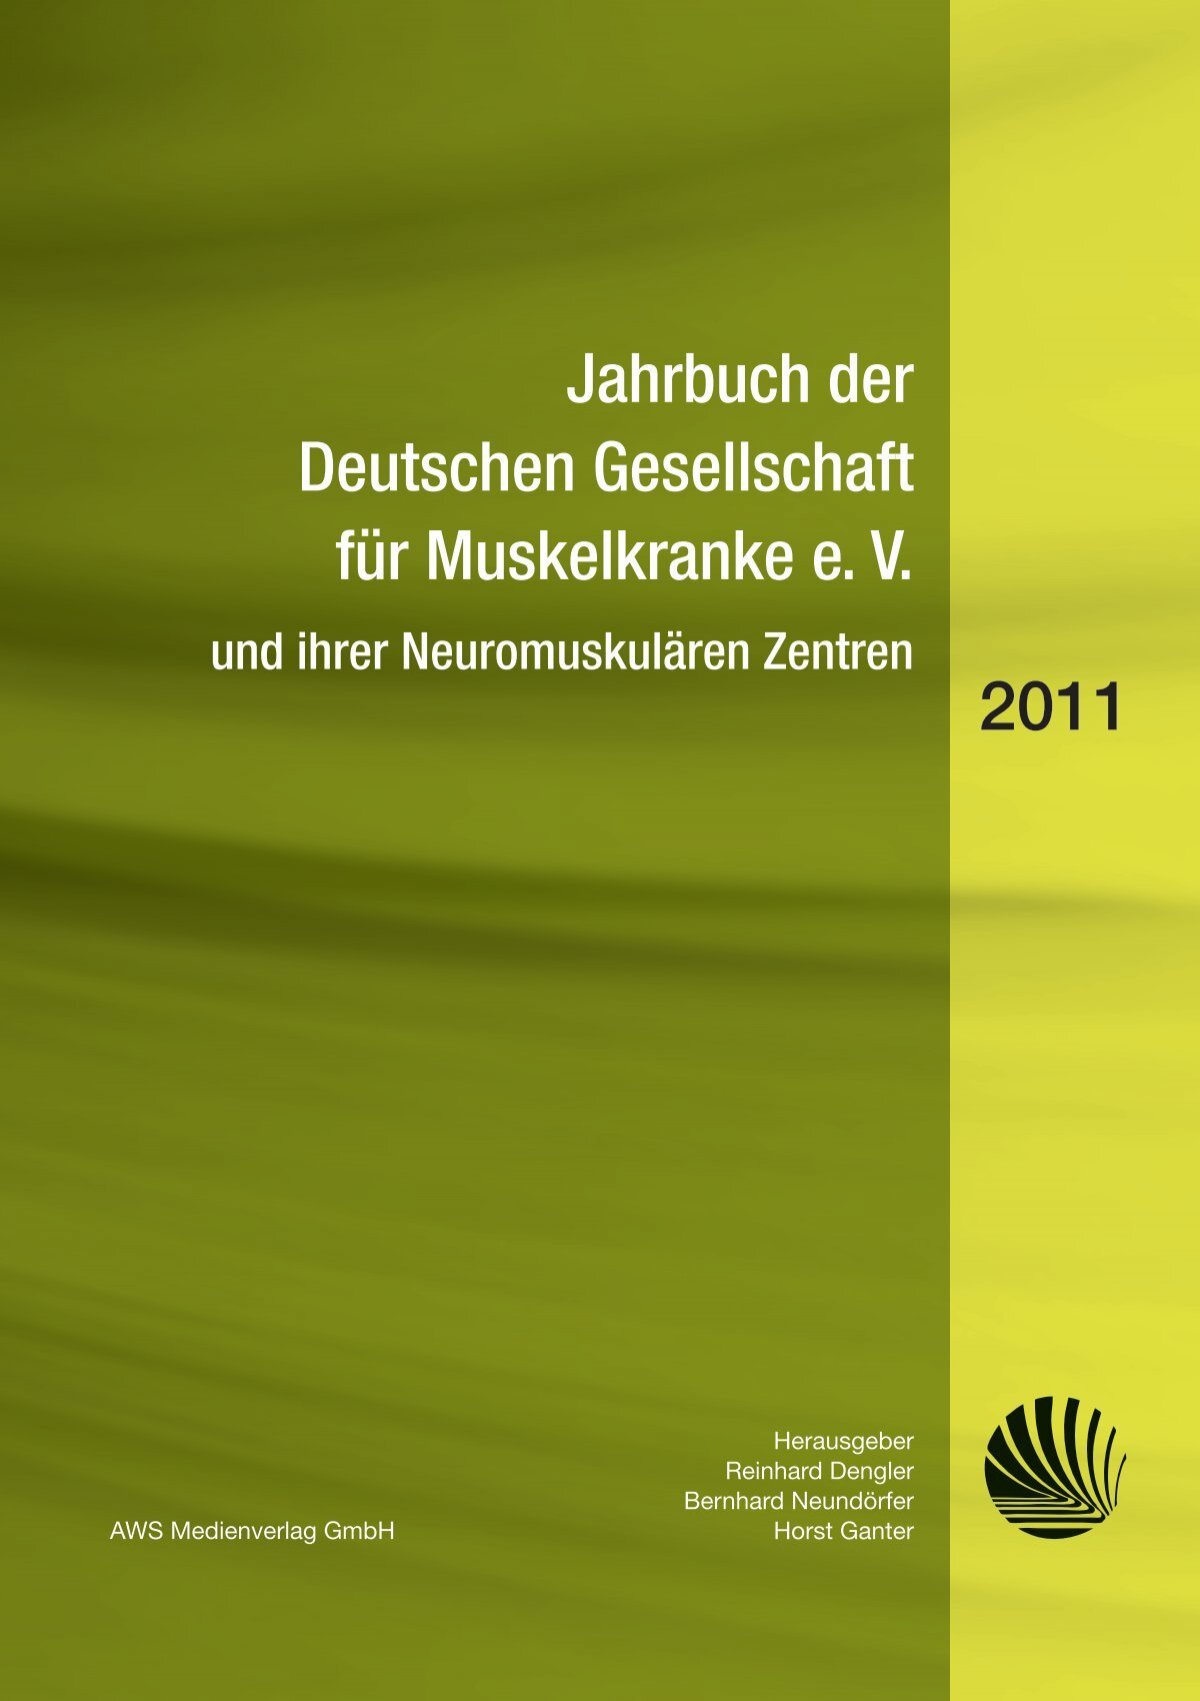 Jahrbuch 11 Deutsche Gesellschaft Fur Muskelkranke Dgm